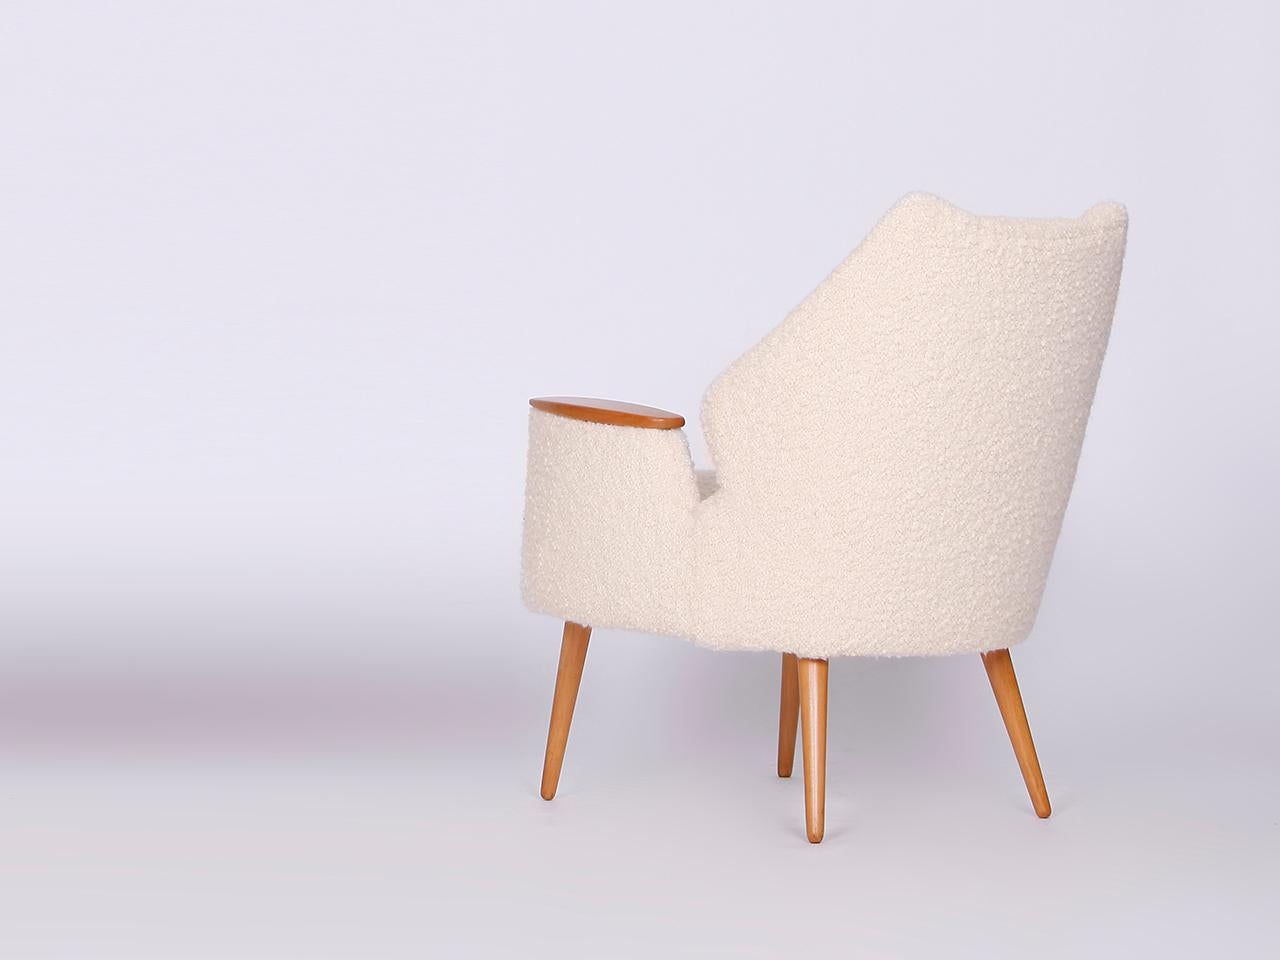 Diese Sessel wurden in den 1960er Jahren hergestellt. Sie wurden vollständig restauriert, einschließlich neuer Federn für die Polsterung. Für den Bezug haben wir einen wunderbar passenden Boucle-Stoff aus feiner englischer Wolle gewählt. Dieses